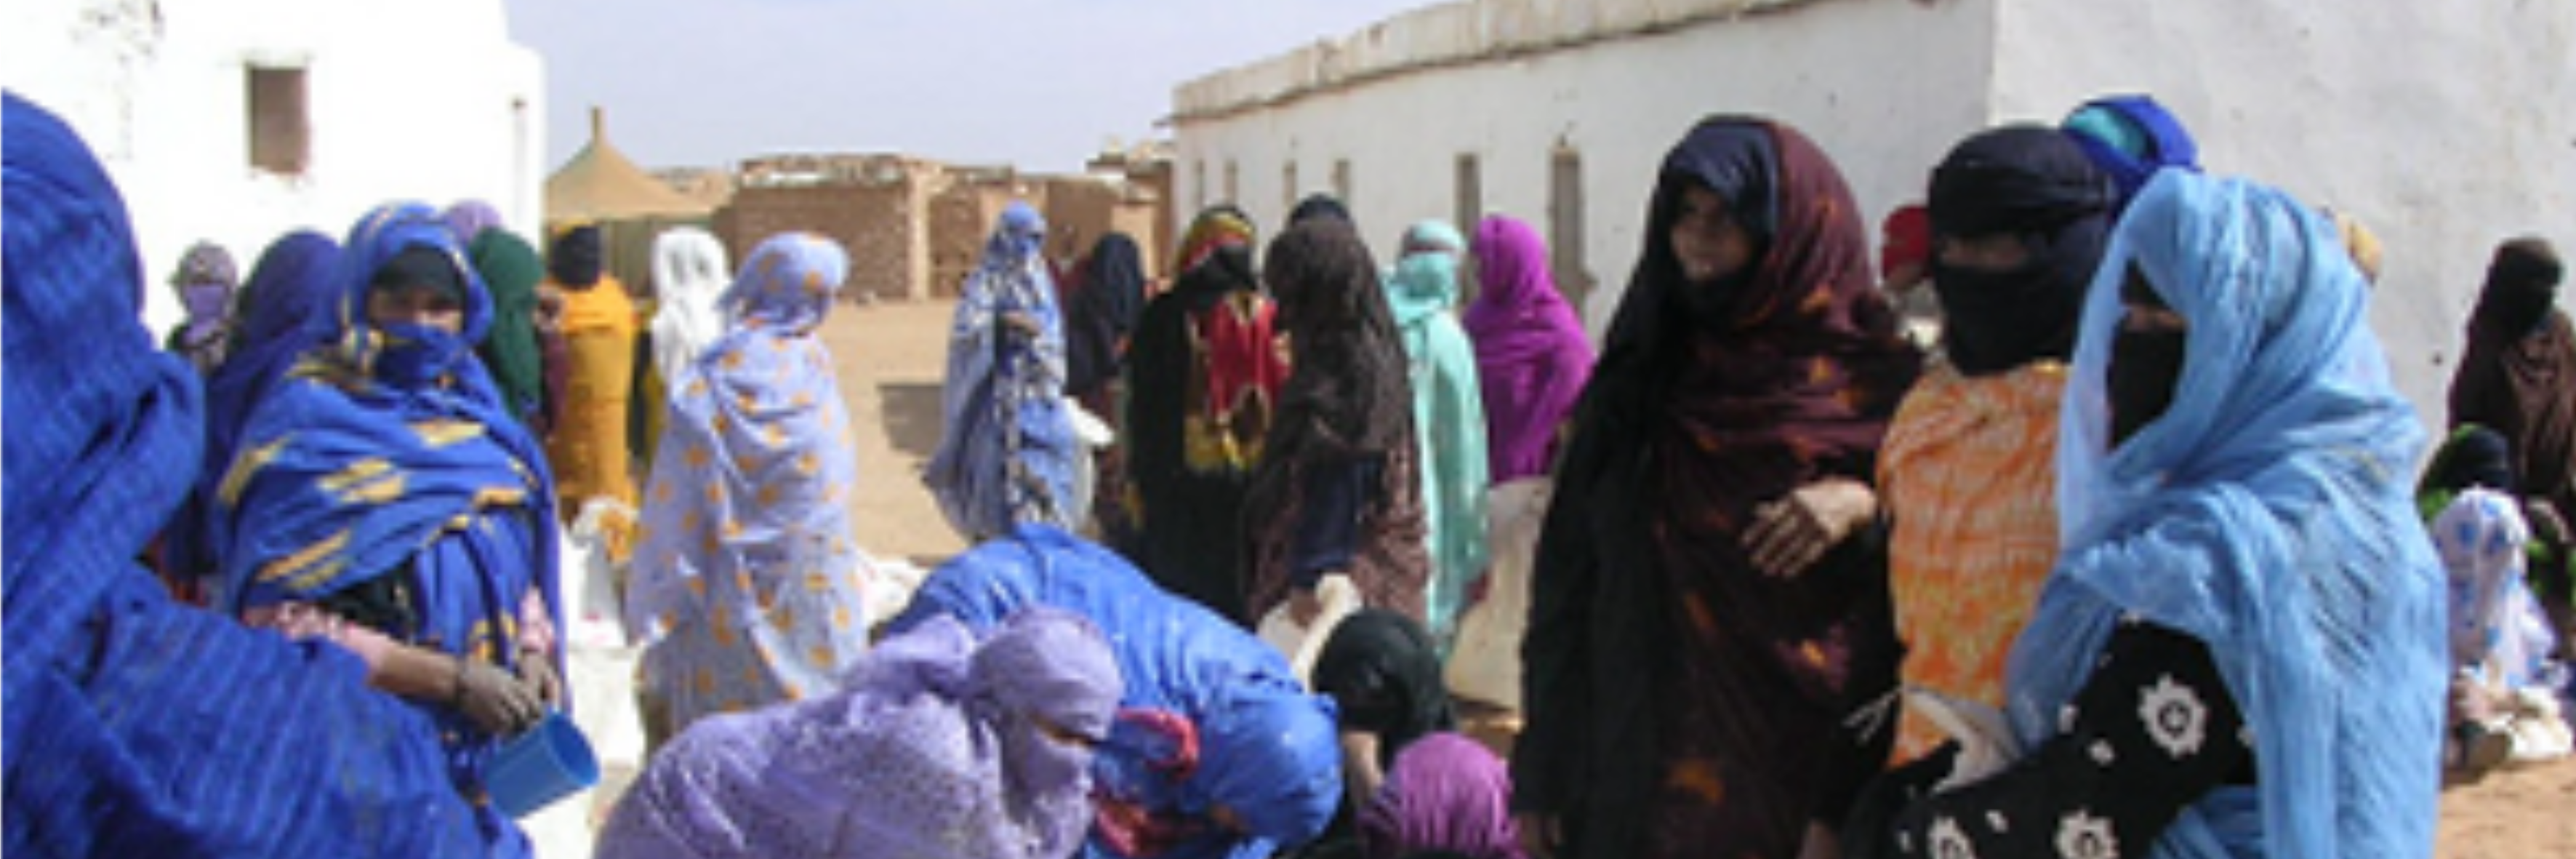 Westsahara: Völkerrecht oder Staatsinteressen?